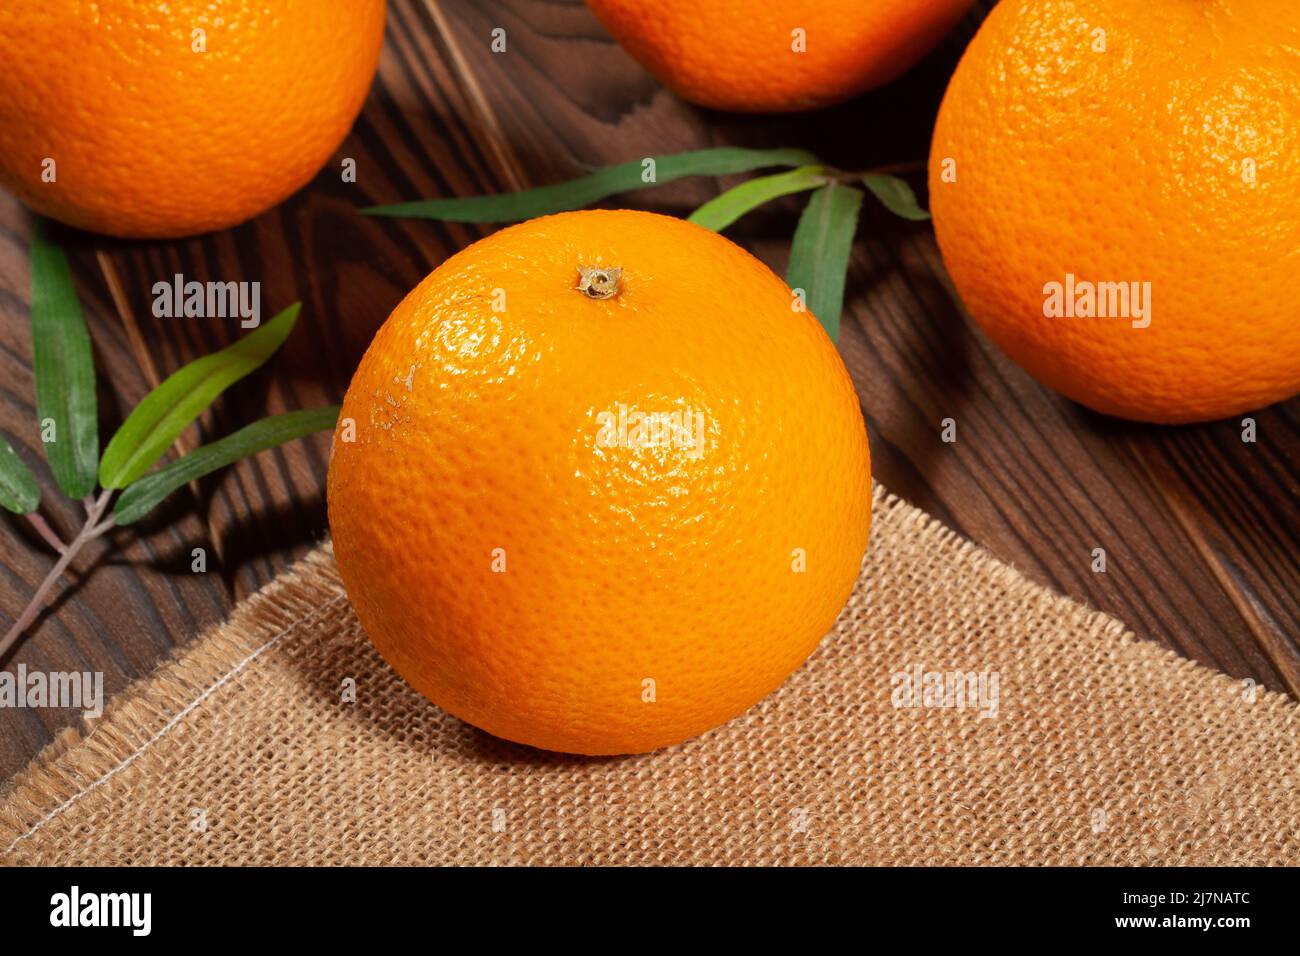 orange fruit on wood background Stock Photo